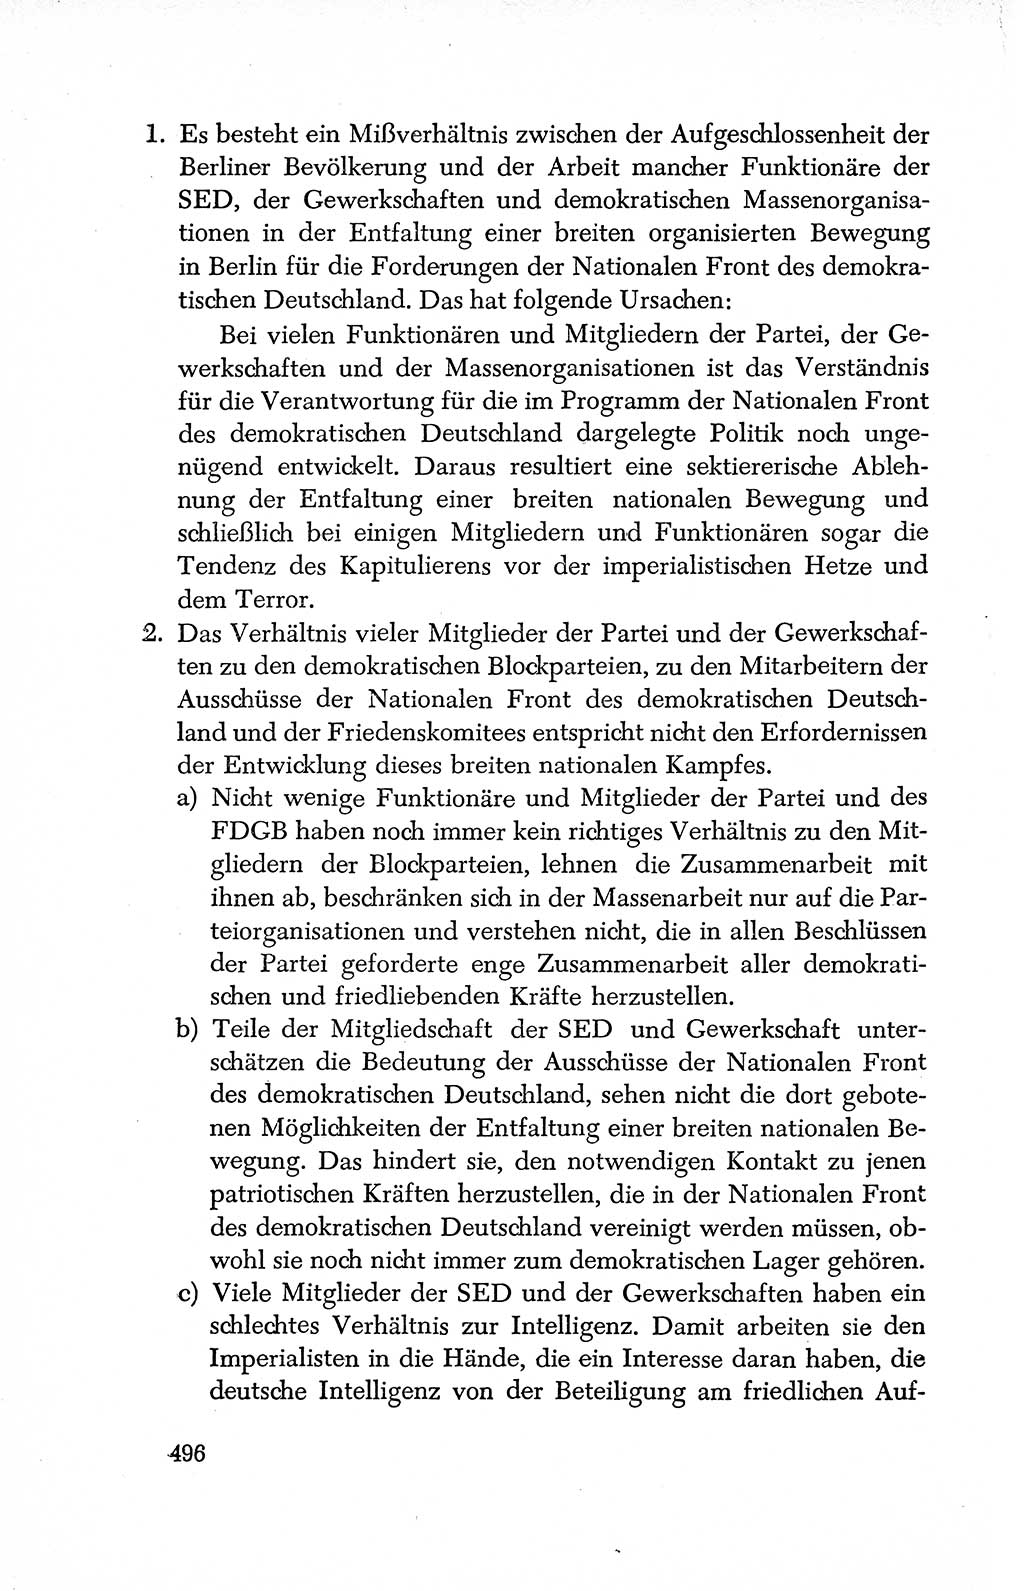 Dokumente der Sozialistischen Einheitspartei Deutschlands (SED) [Deutsche Demokratische Republik (DDR)] 1950-1952, Seite 496 (Dok. SED DDR 1950-1952, S. 496)